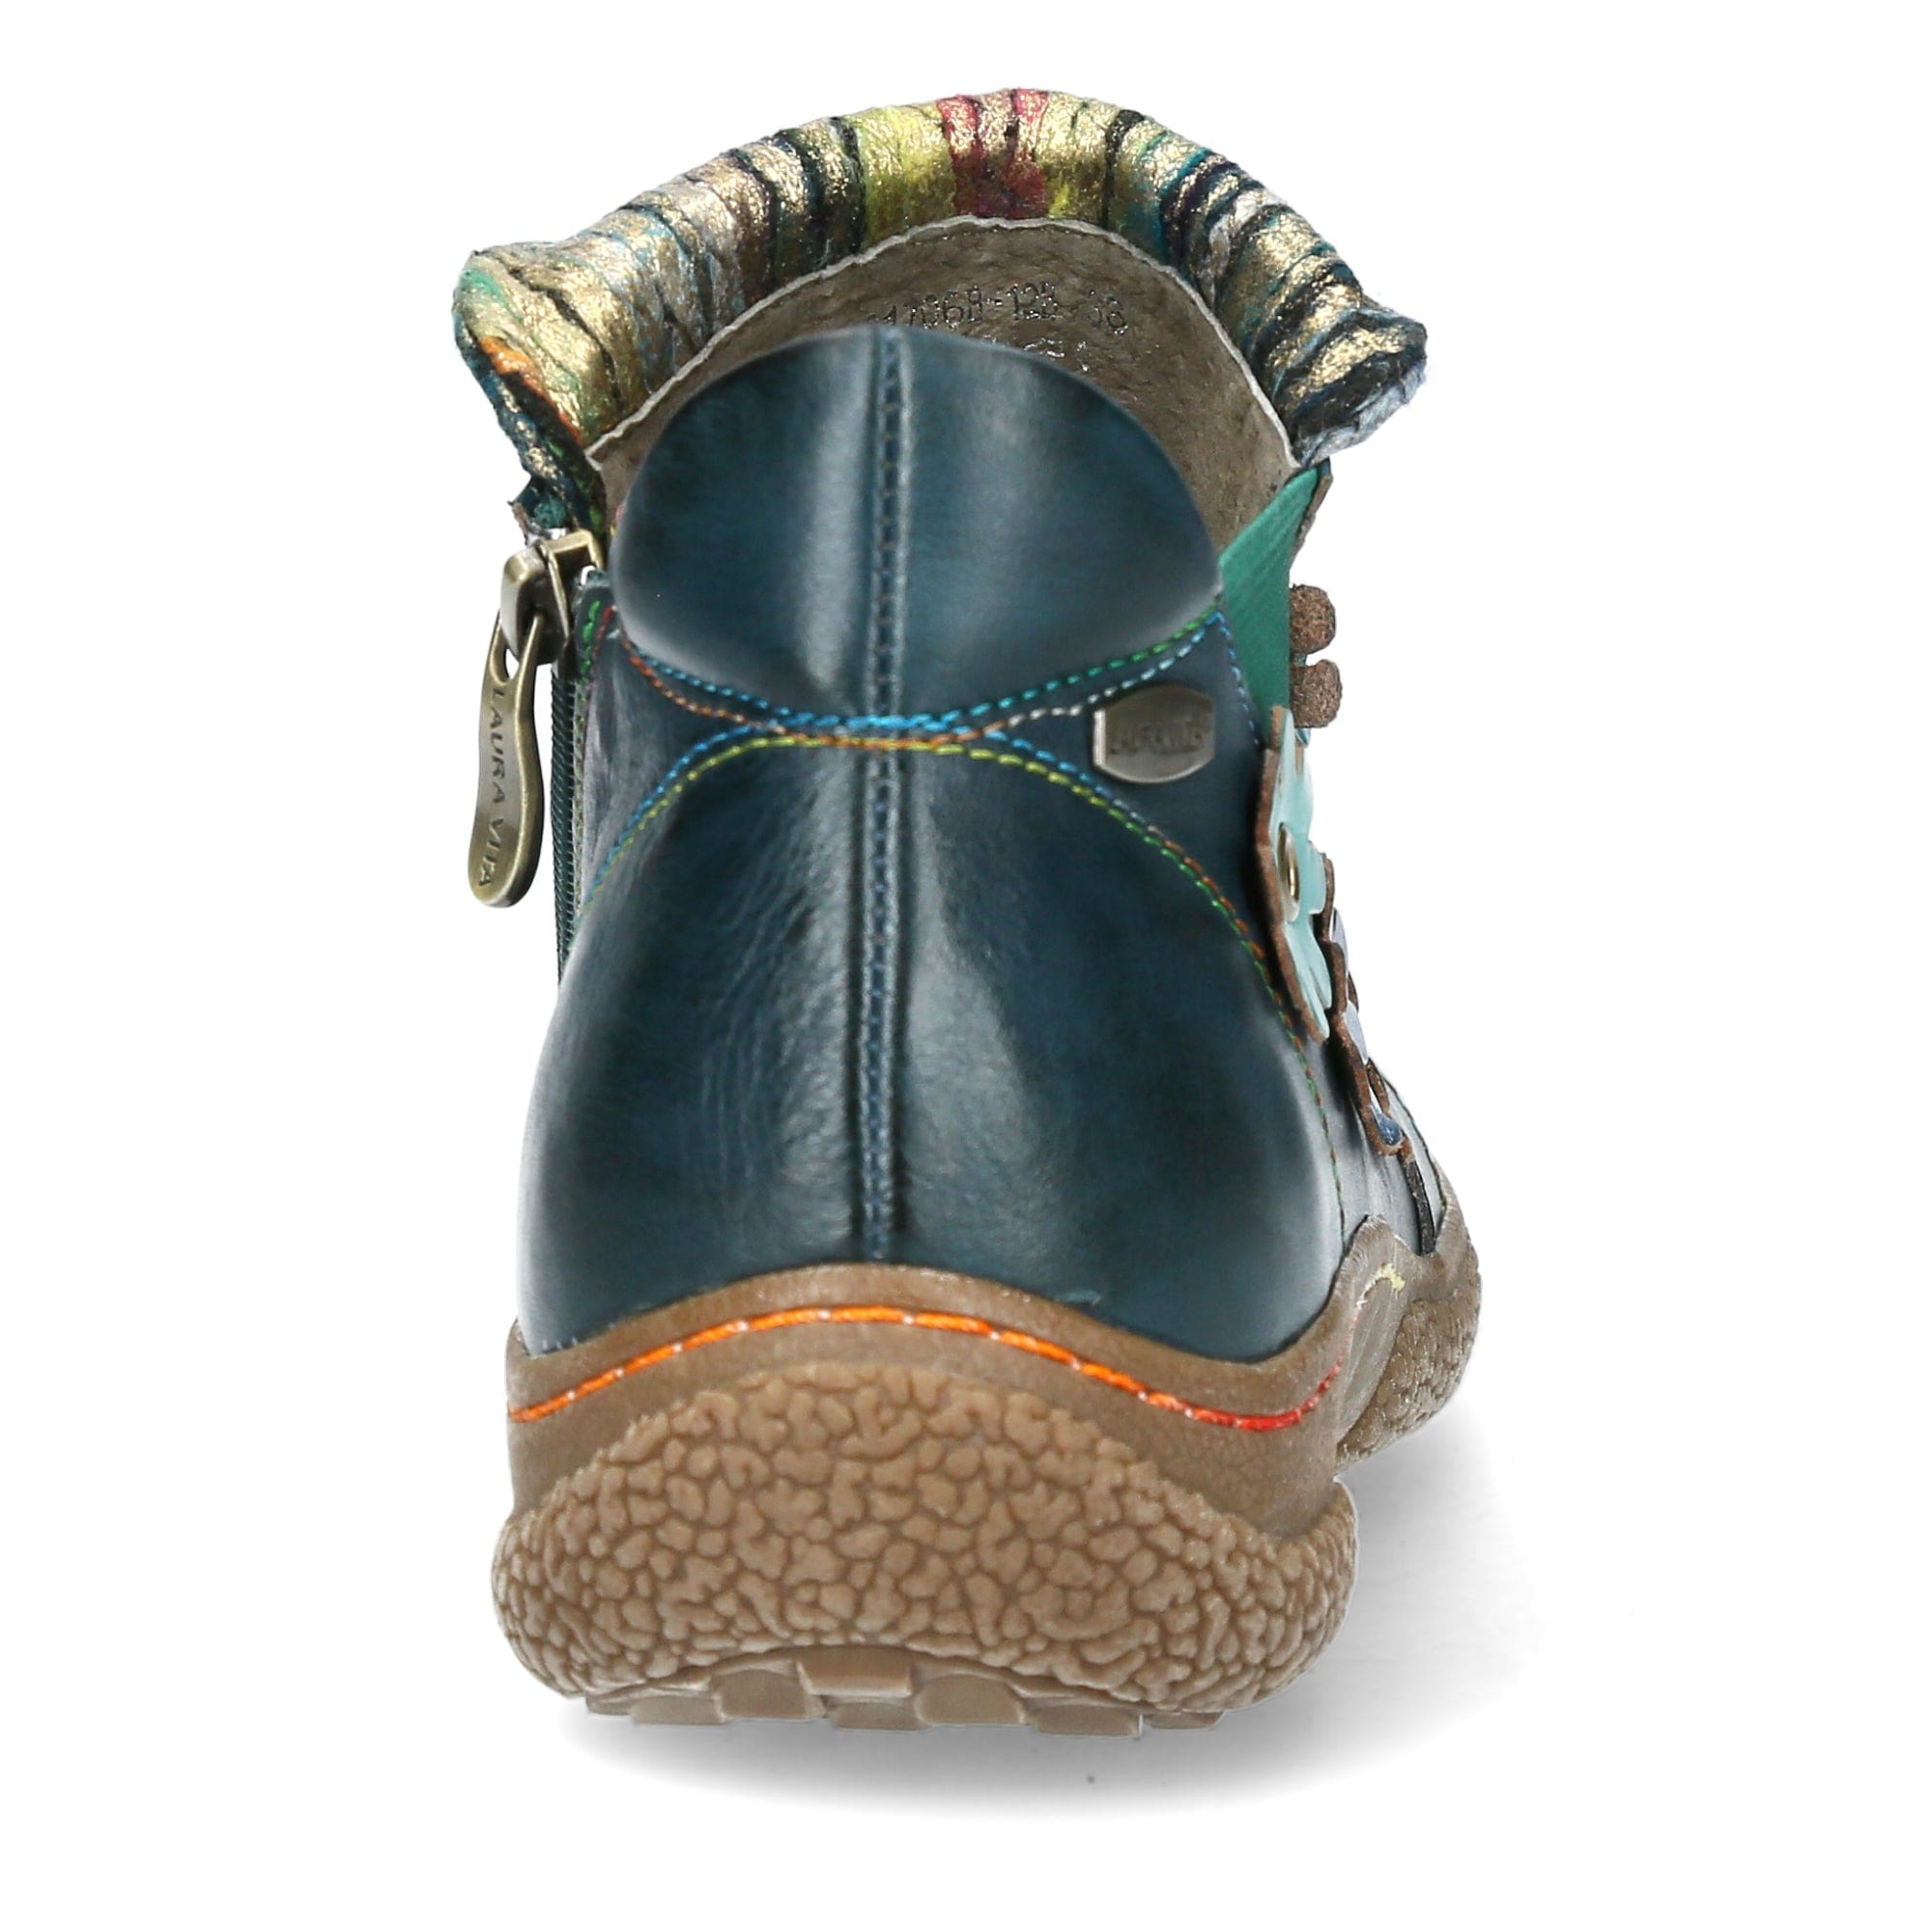 Schuh GOCTHO 12 - Boots